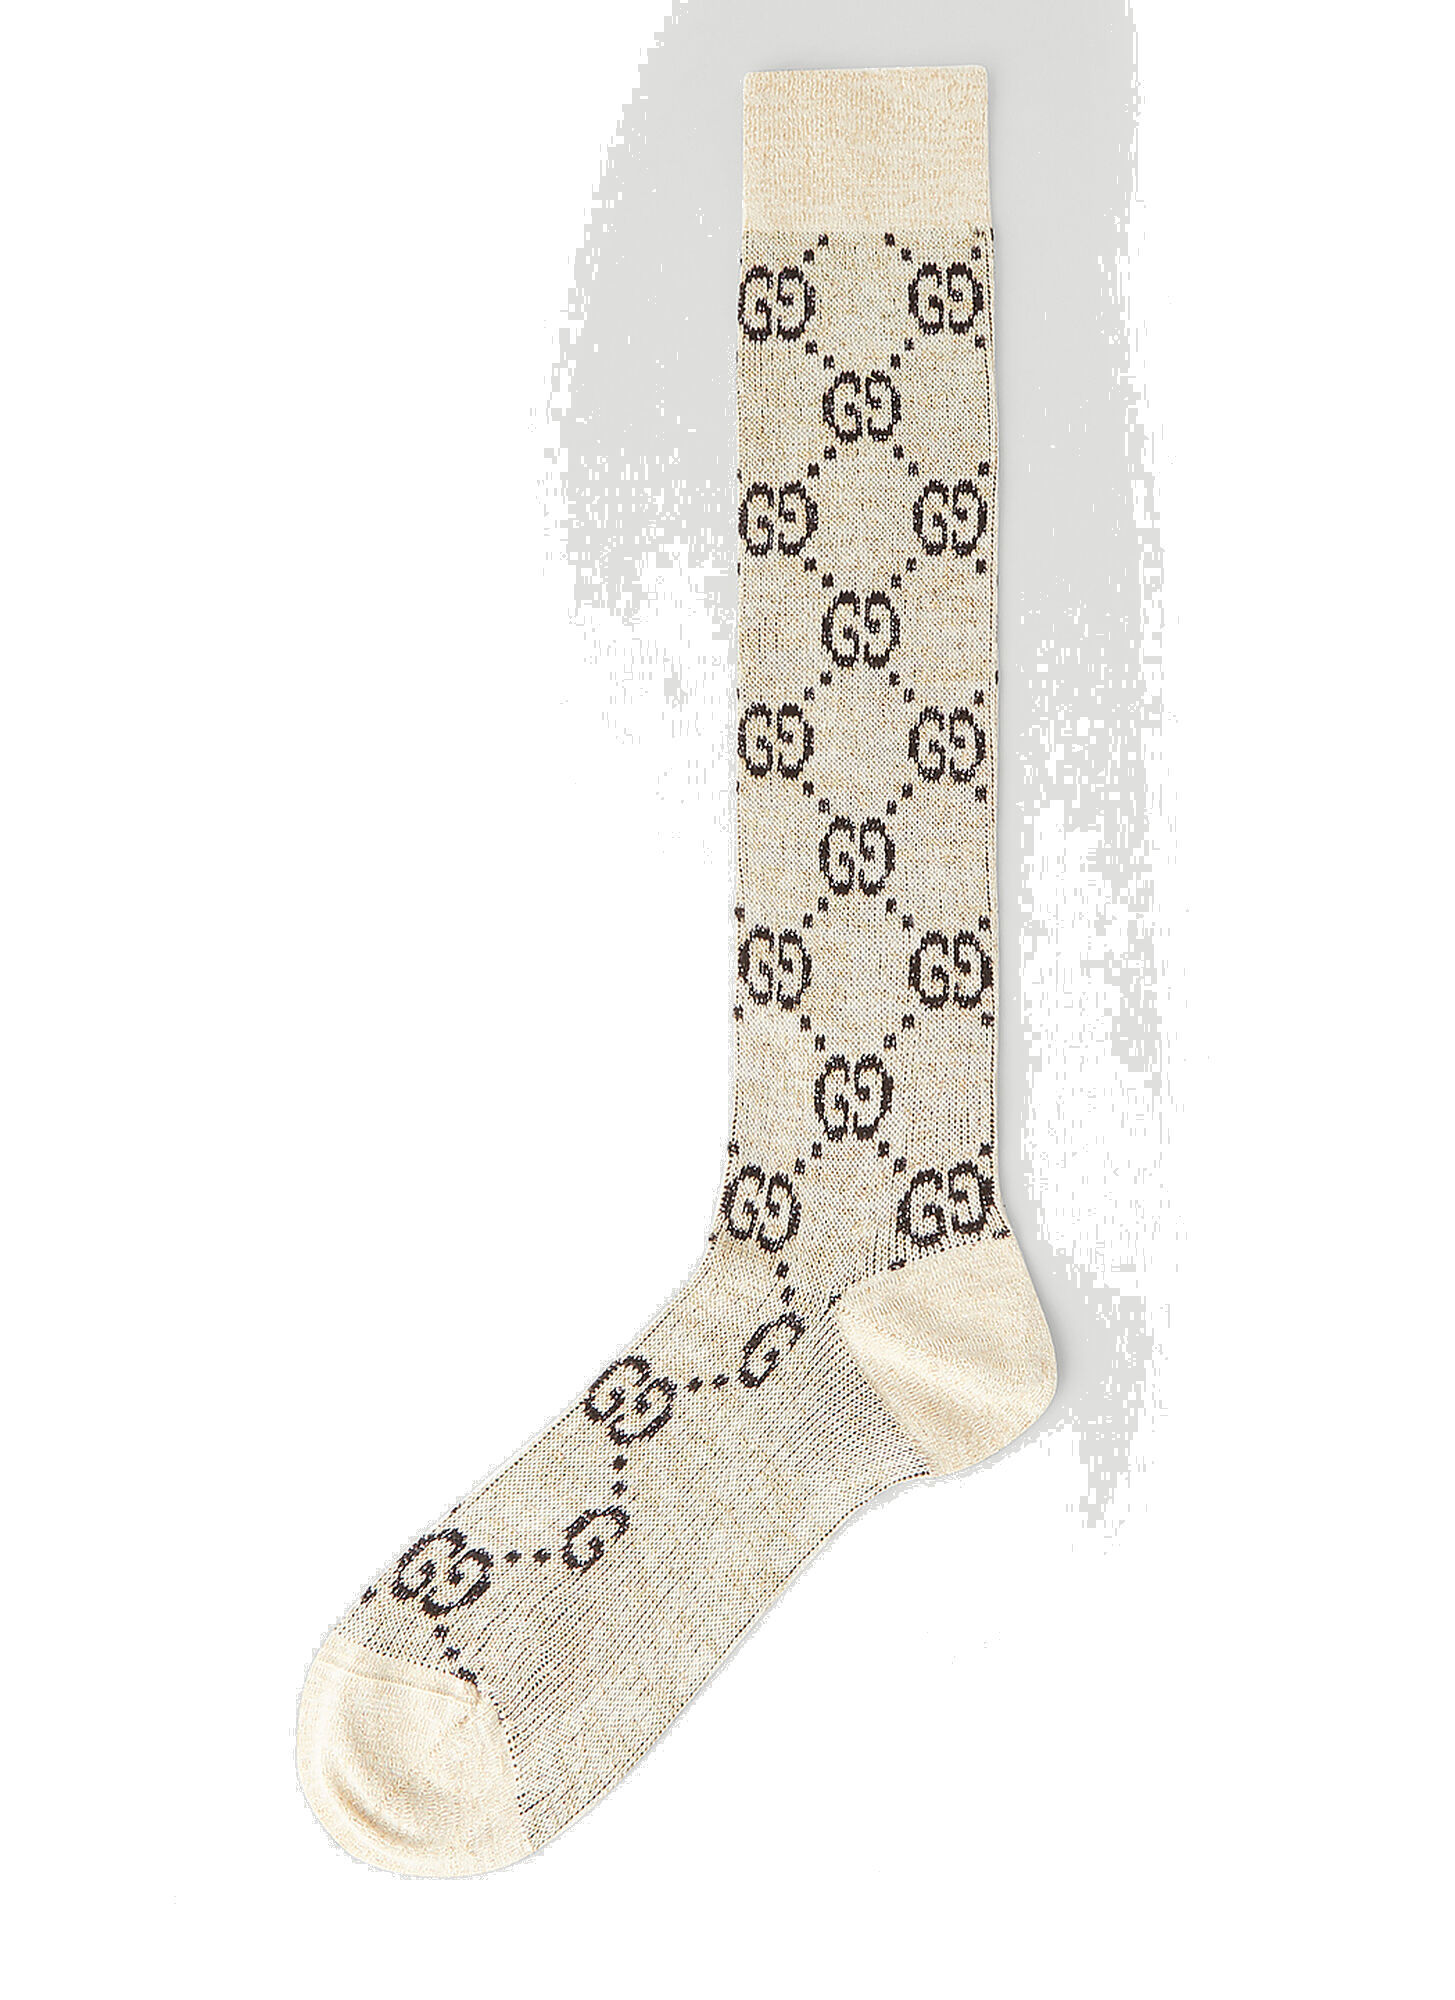 Photo: Lamé GG Socks in White